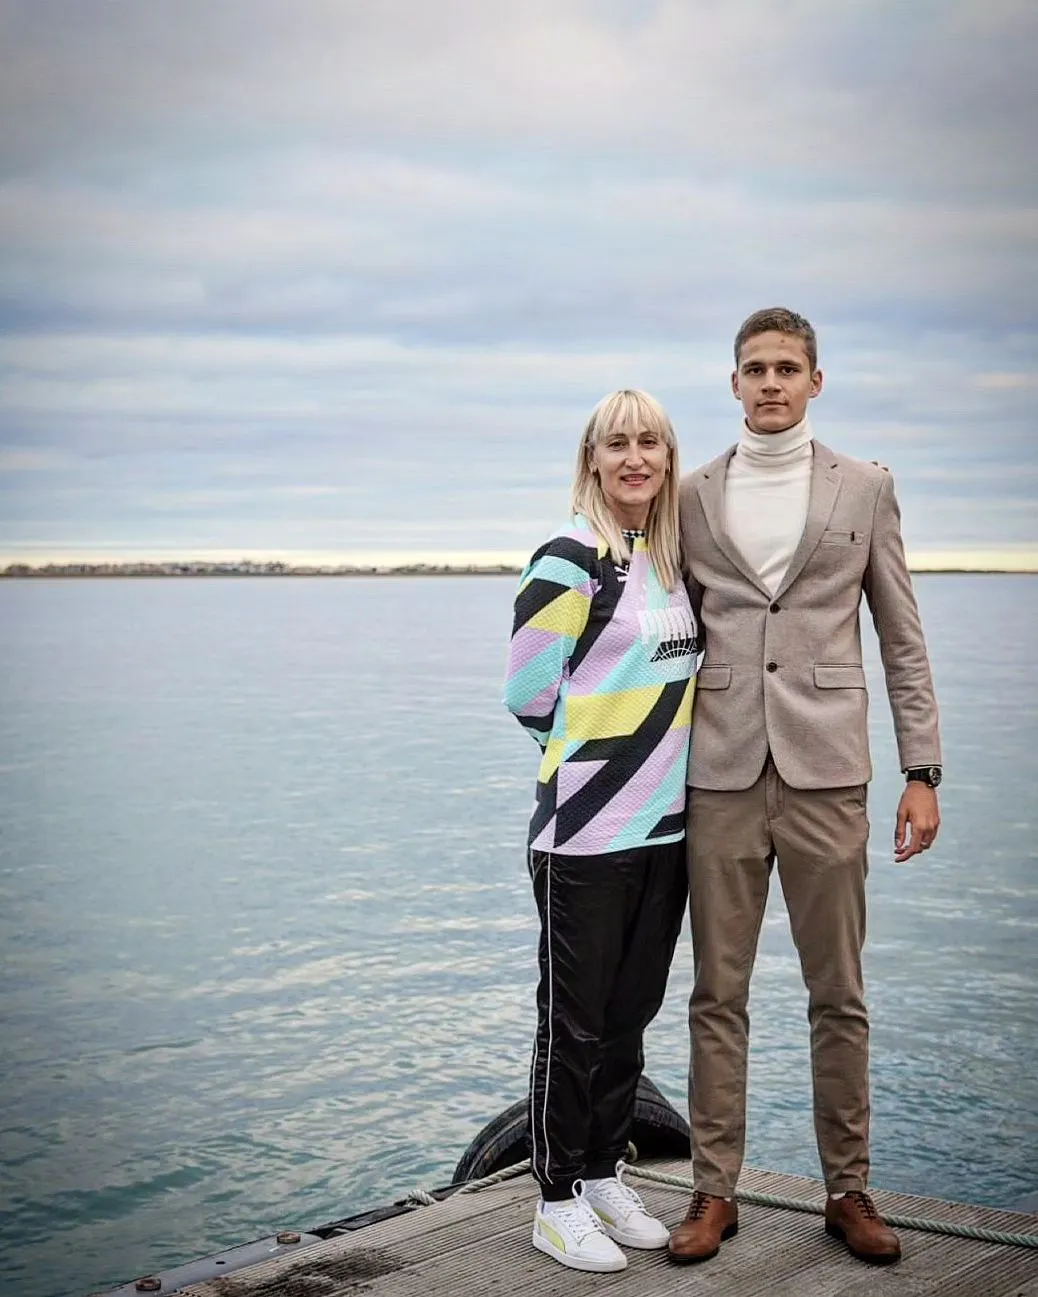 Магучіх зустрічається із сином своєї тренерки. Як виглядає обранець найкрасивішої легкоатлетки України